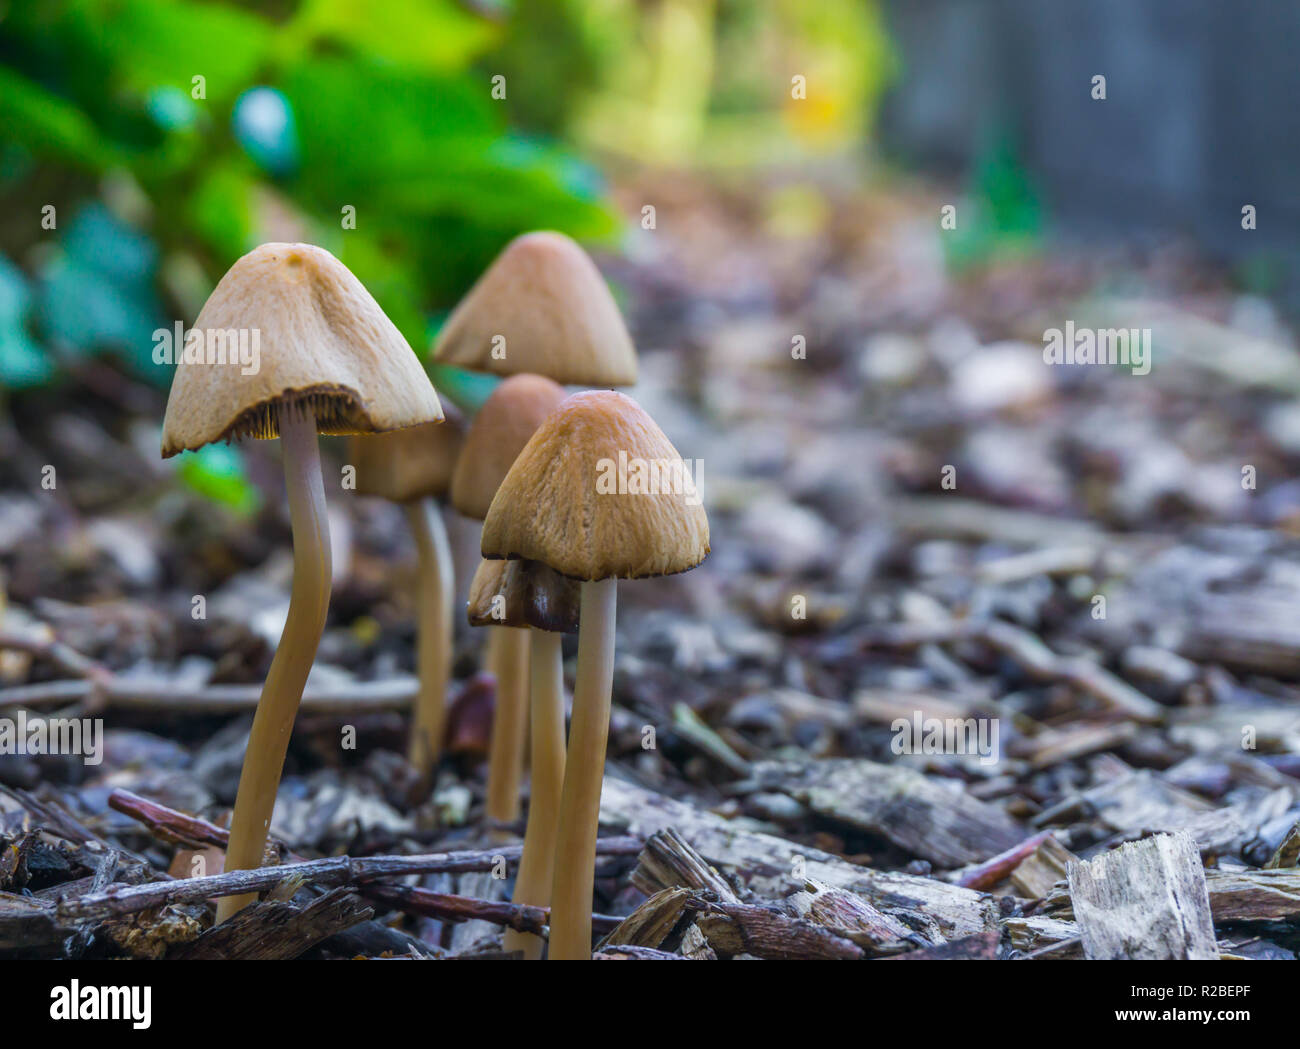 Herbst Gruppe von Weißen dunce cap Pilze mit Glockenförmigen Kappen zusammen wachsen in einigen Holzspäne Stockfoto